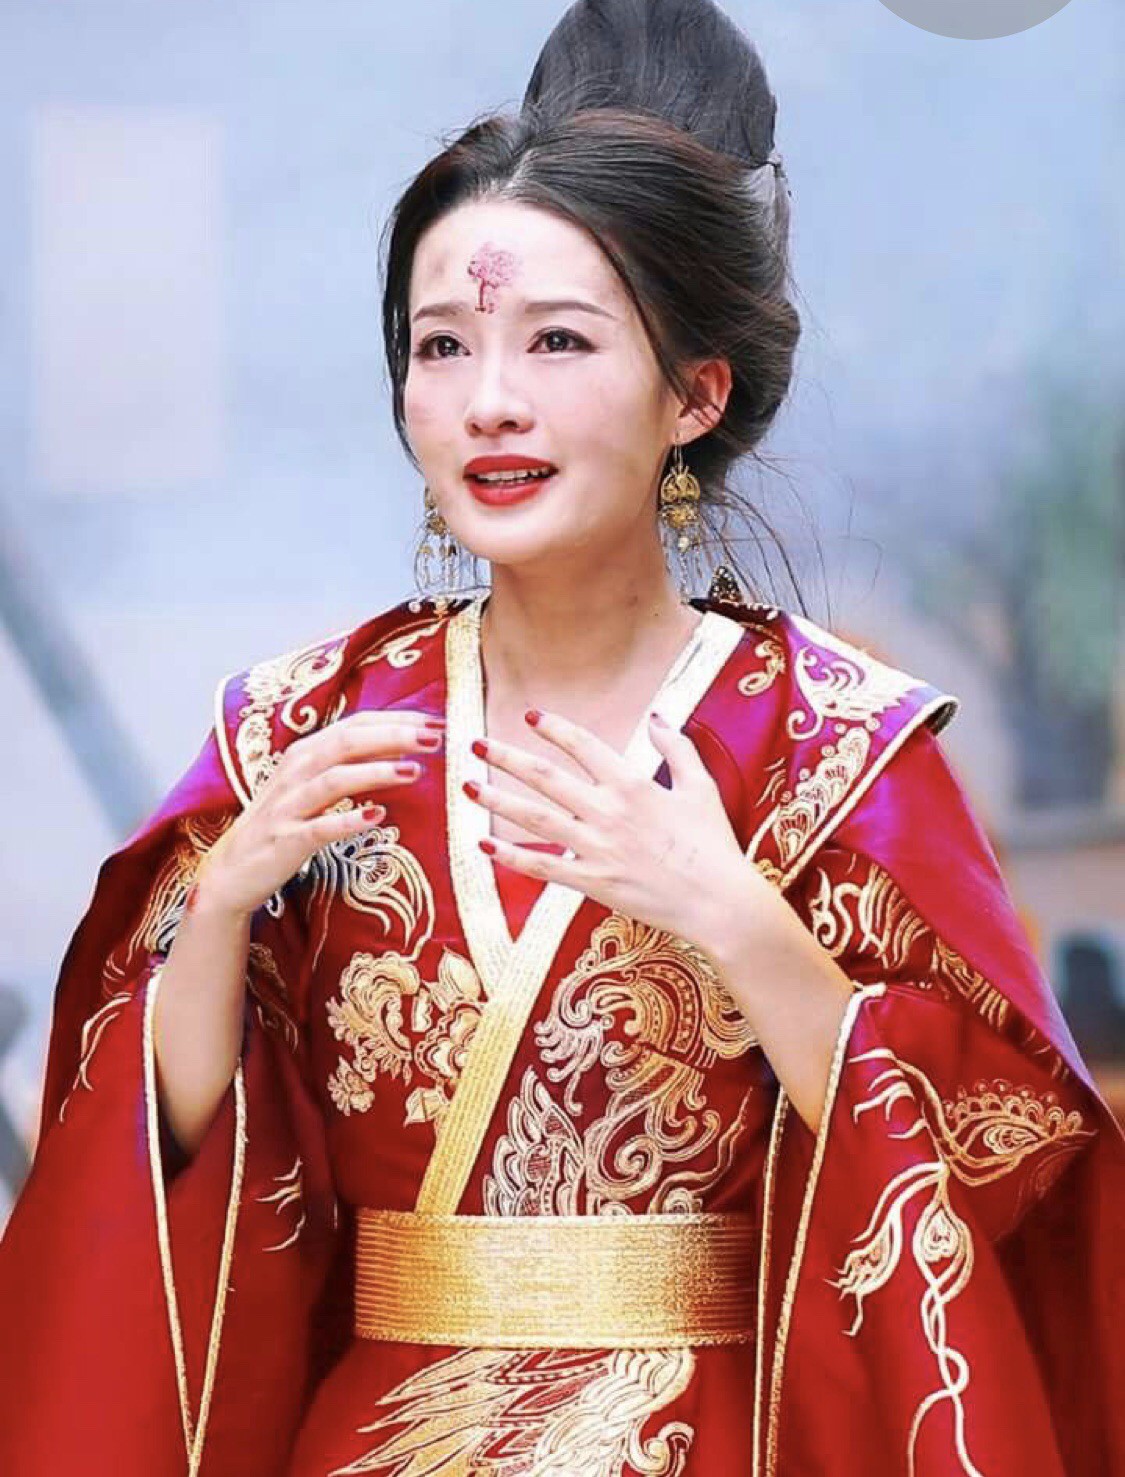 Китайские принцессы. Принцесса Китая. Самая красивая принцесса Китая. Китайская принцесса фото. Восточные актрисы Китая.